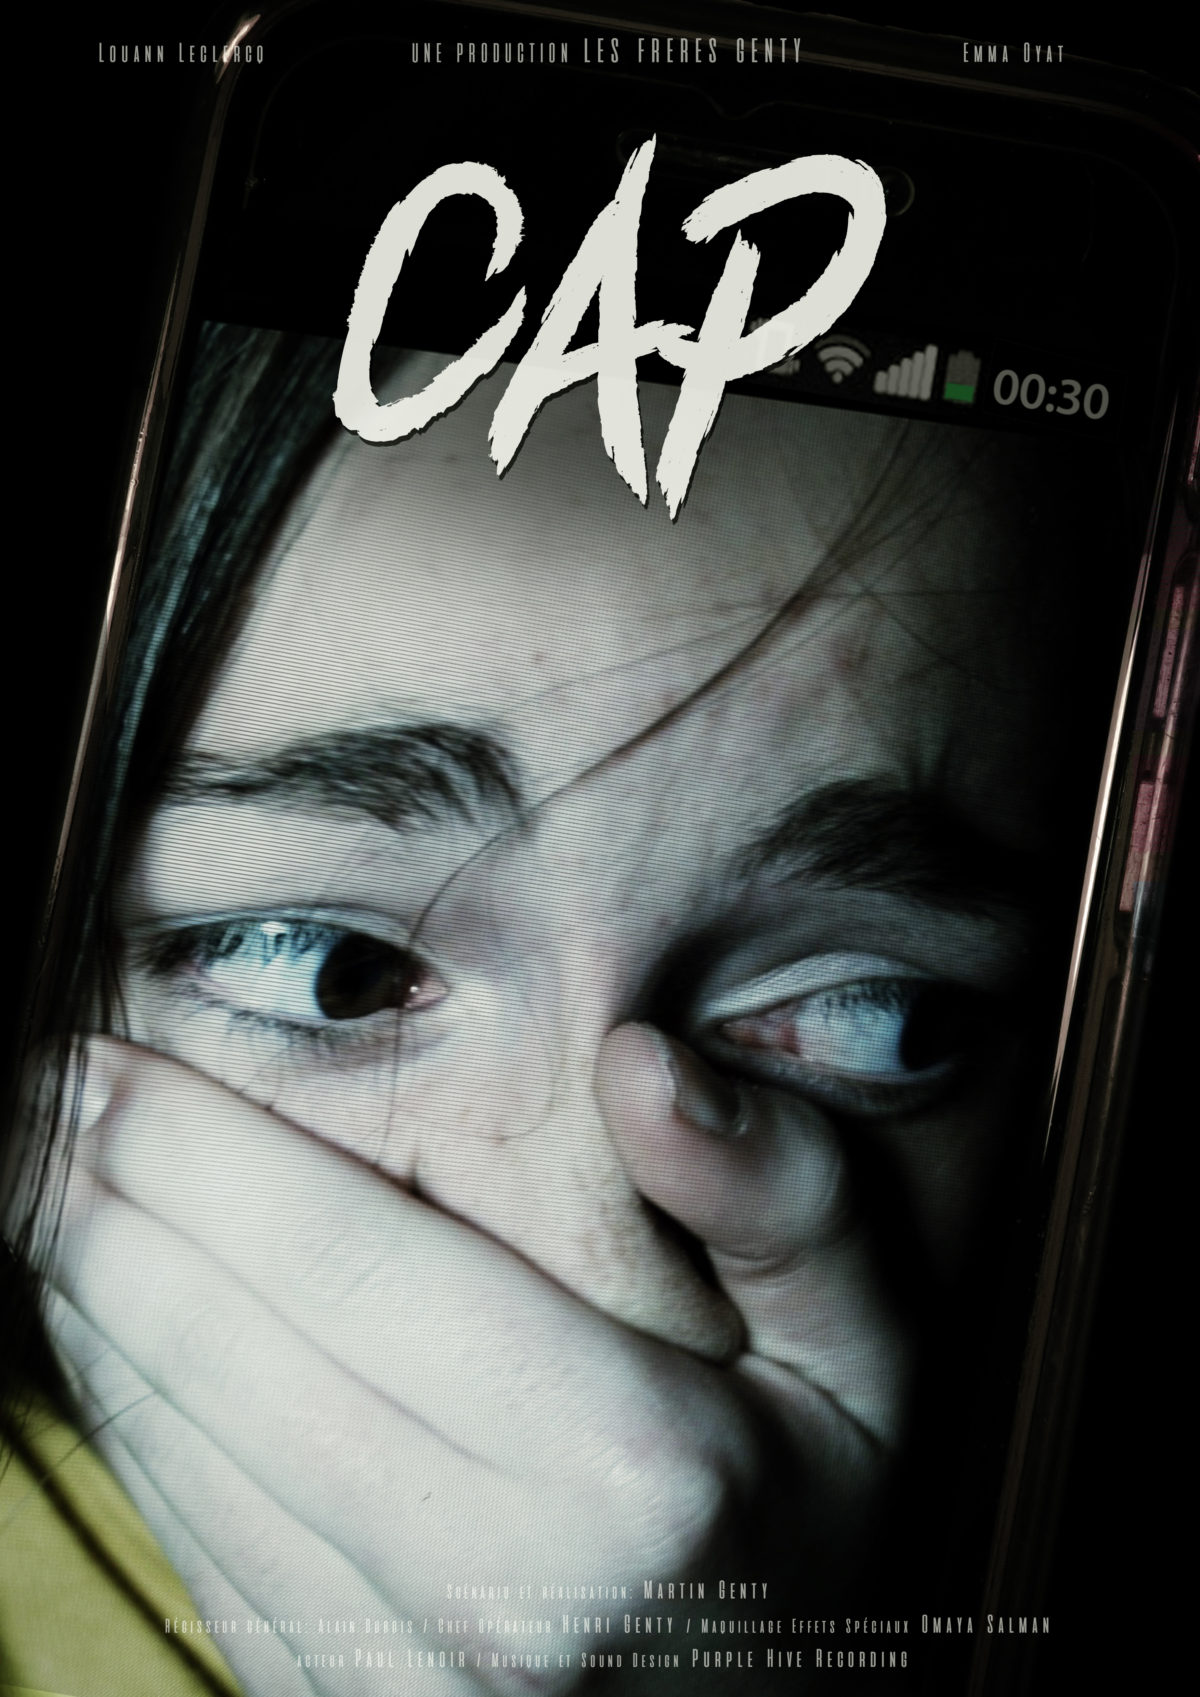 Affiche du film de science-fiction CAP. Photo d'un fond d'écran de téléphone où on y voit une fille apeurée qui se tient la bouche et le nez pour ne pas crier.